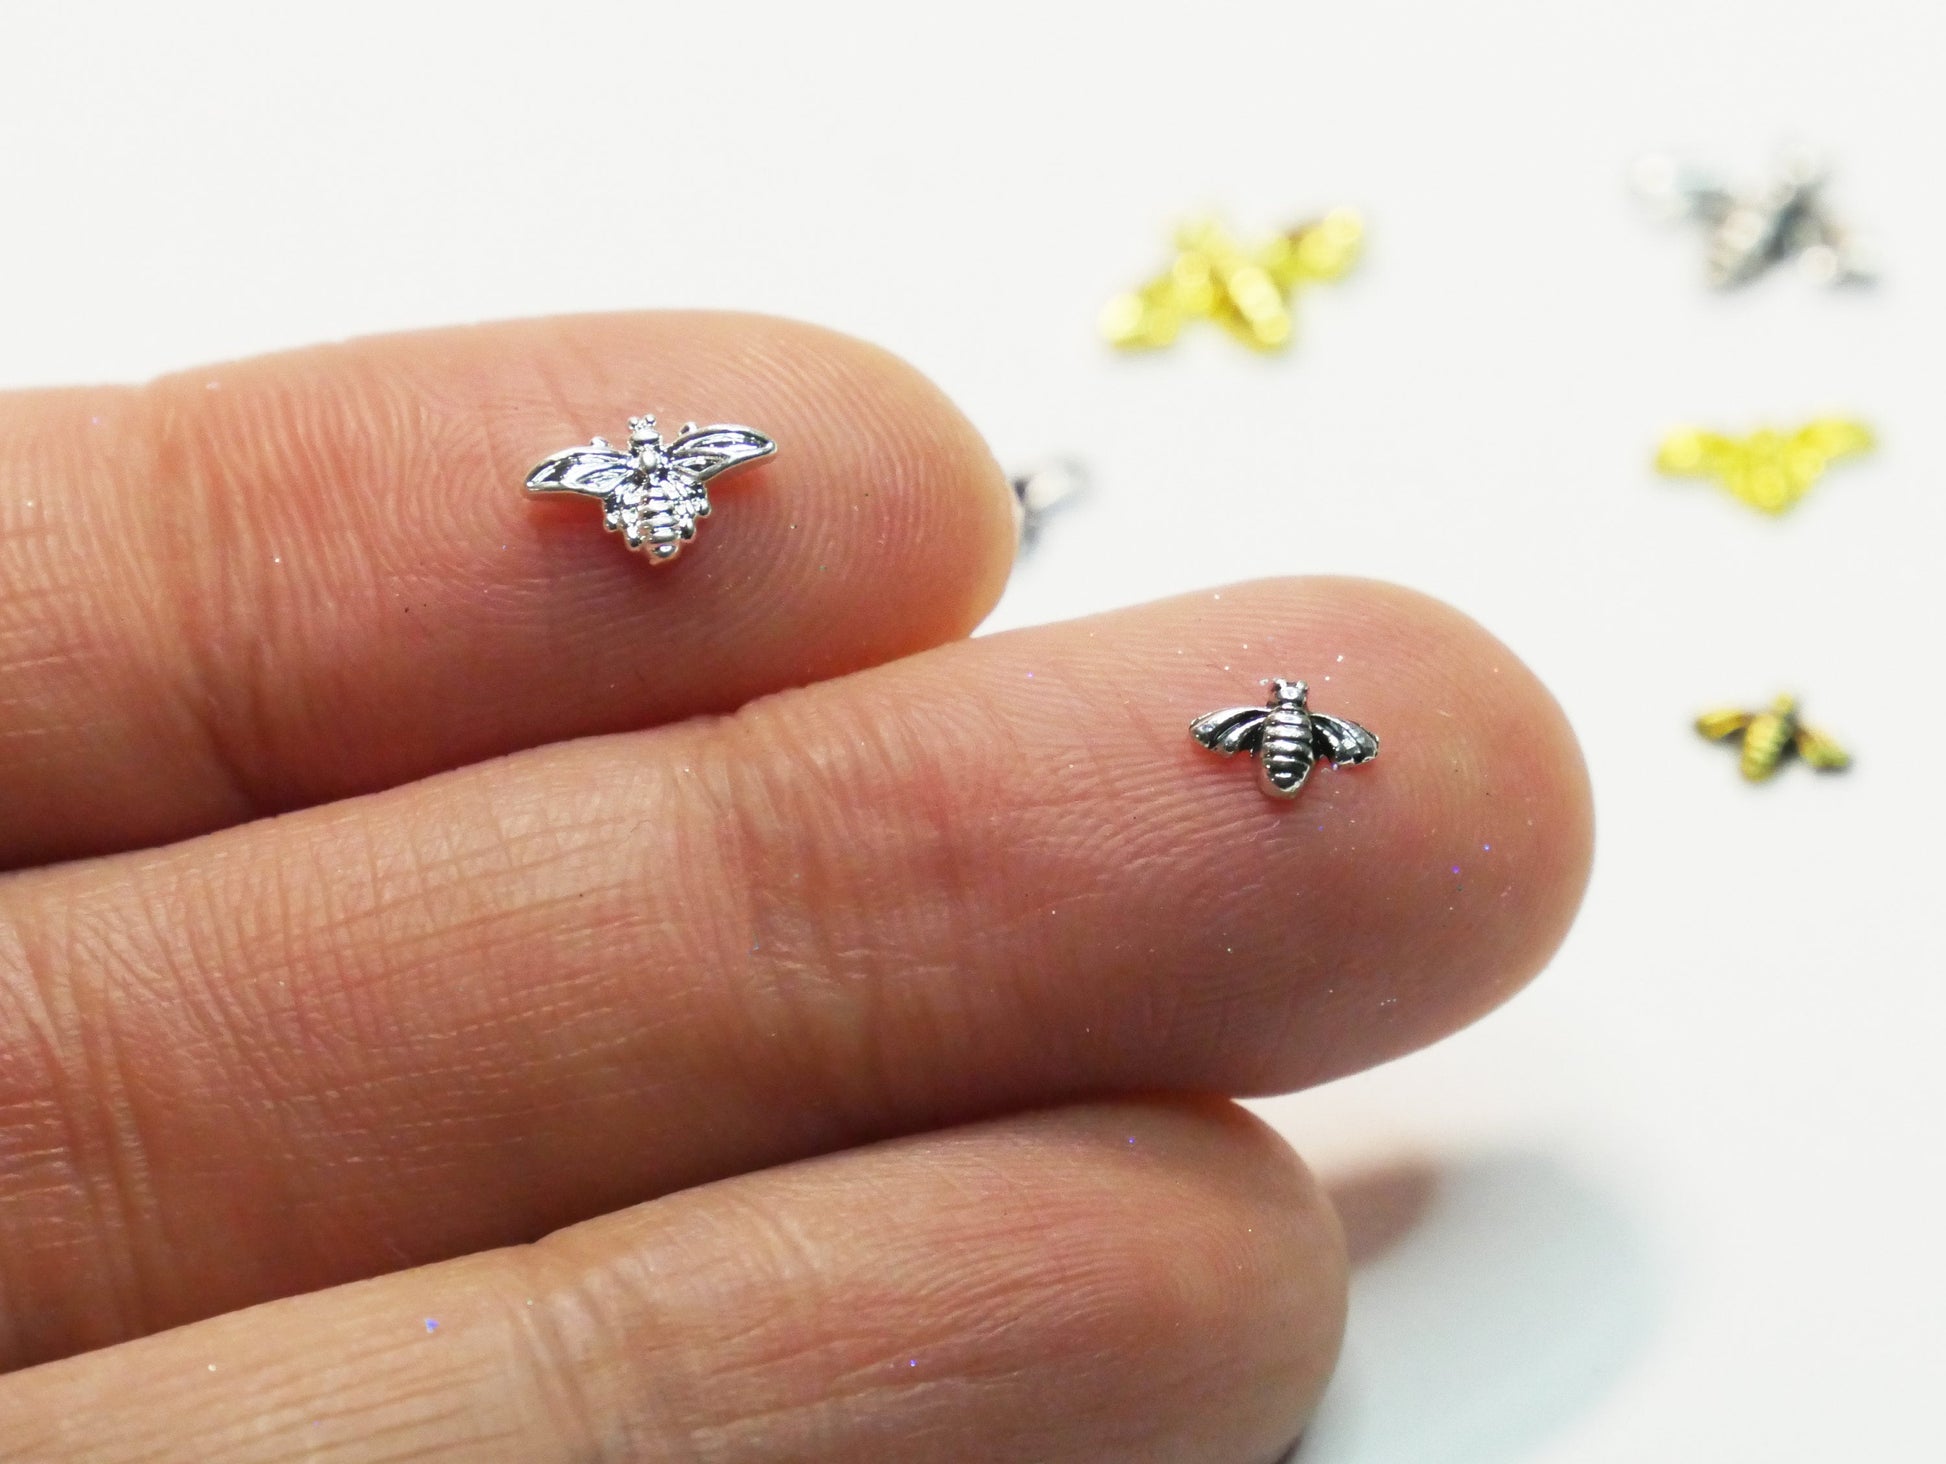 5 pcs 3D Bee nail decoration/ Bee golden Nail DIY nail deco Bee charm for nail gel mail polish design